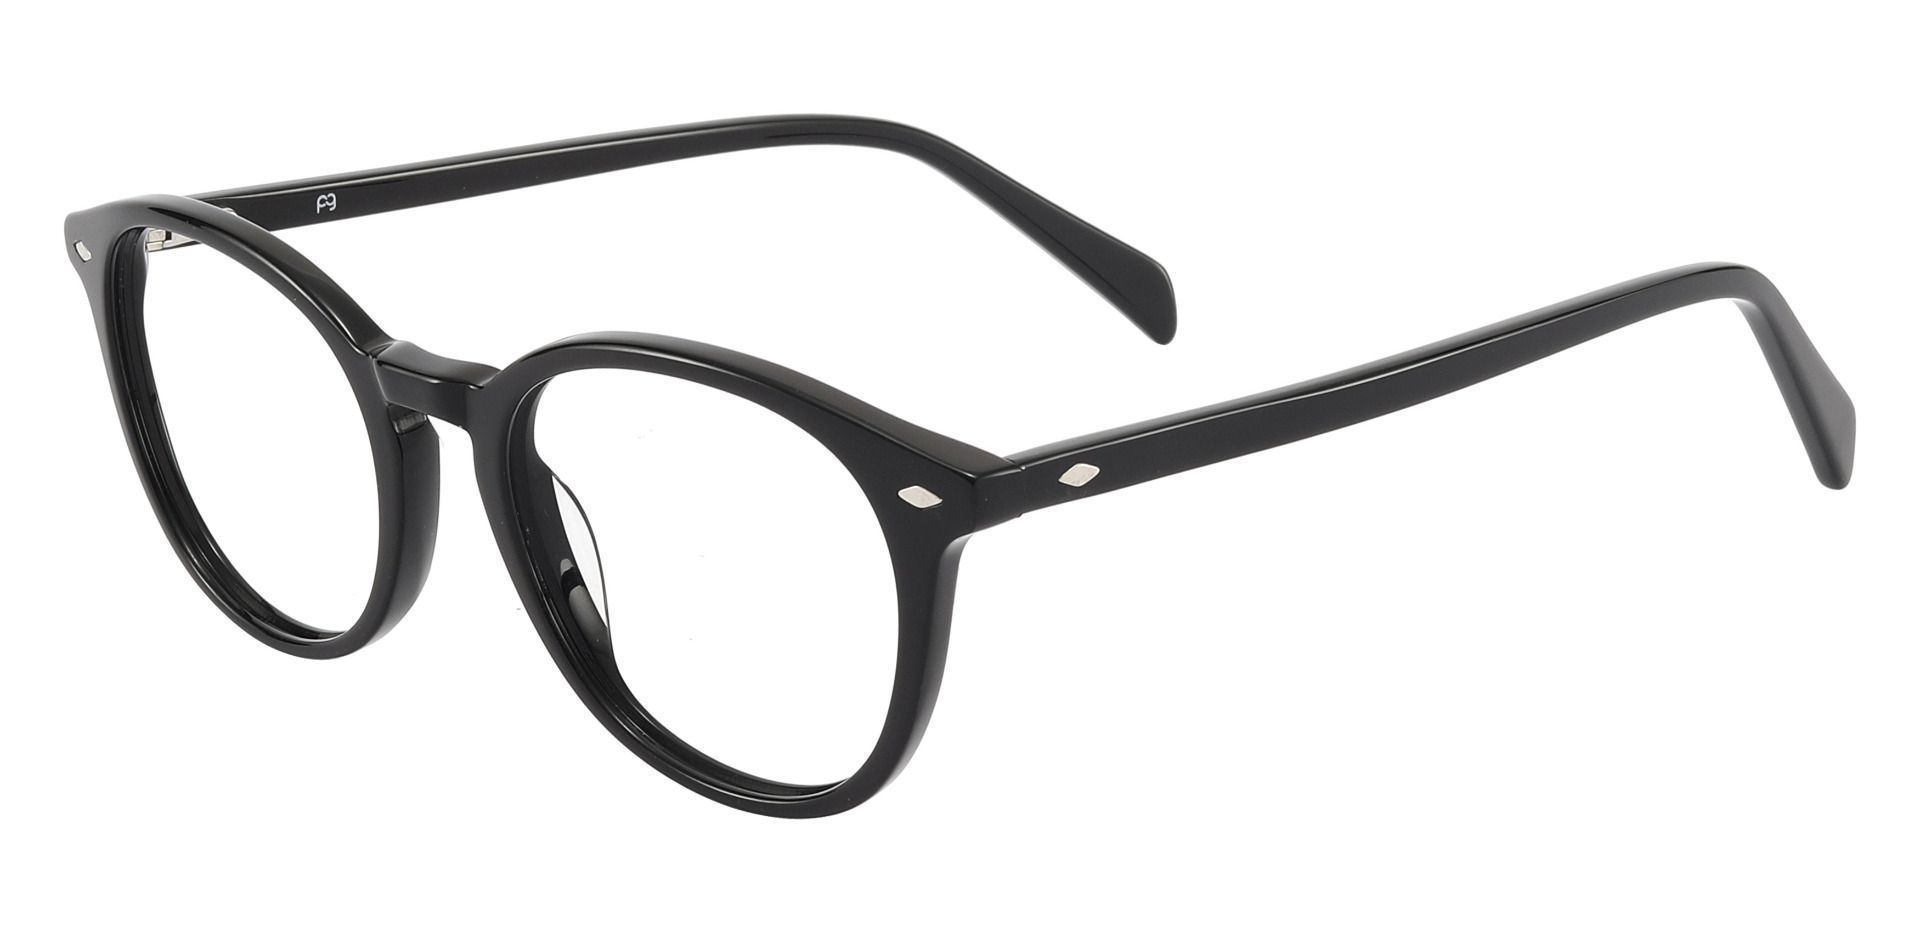 Cove Oval Prescription Glasses - Black